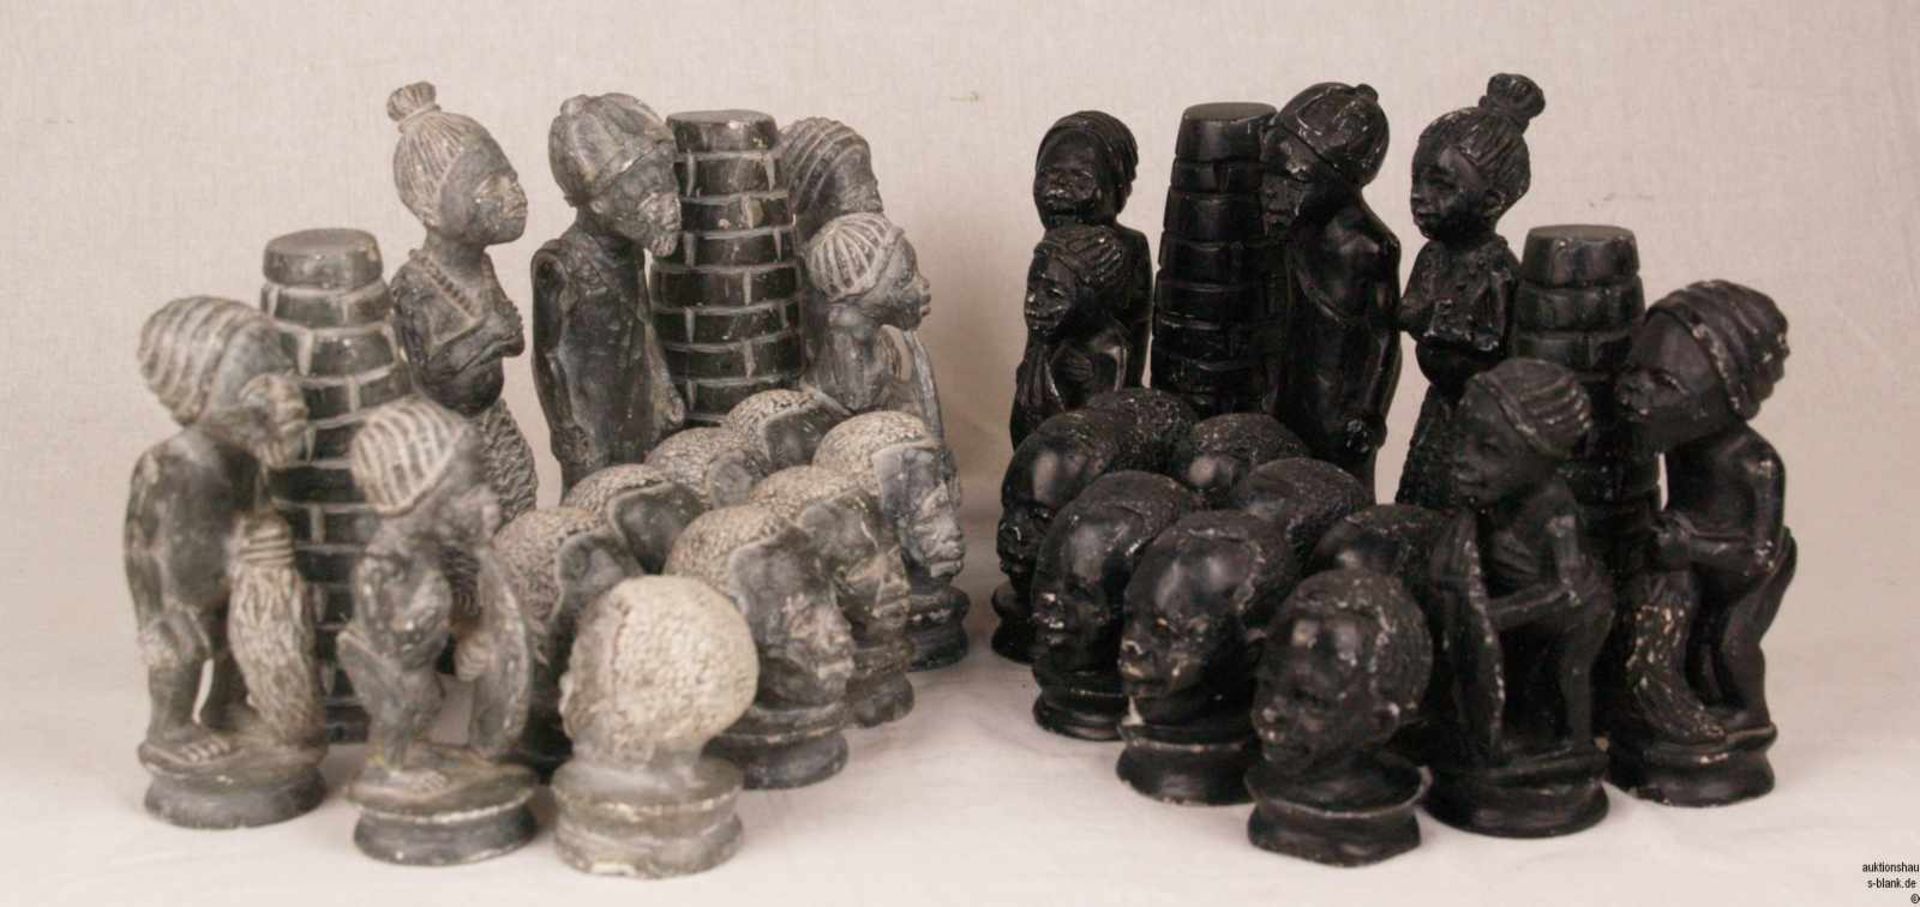 Schachfiguren - Speckstein, geschnitzt, schwarz- und grünfarben, vollständiger Schachfiguren-Set mit